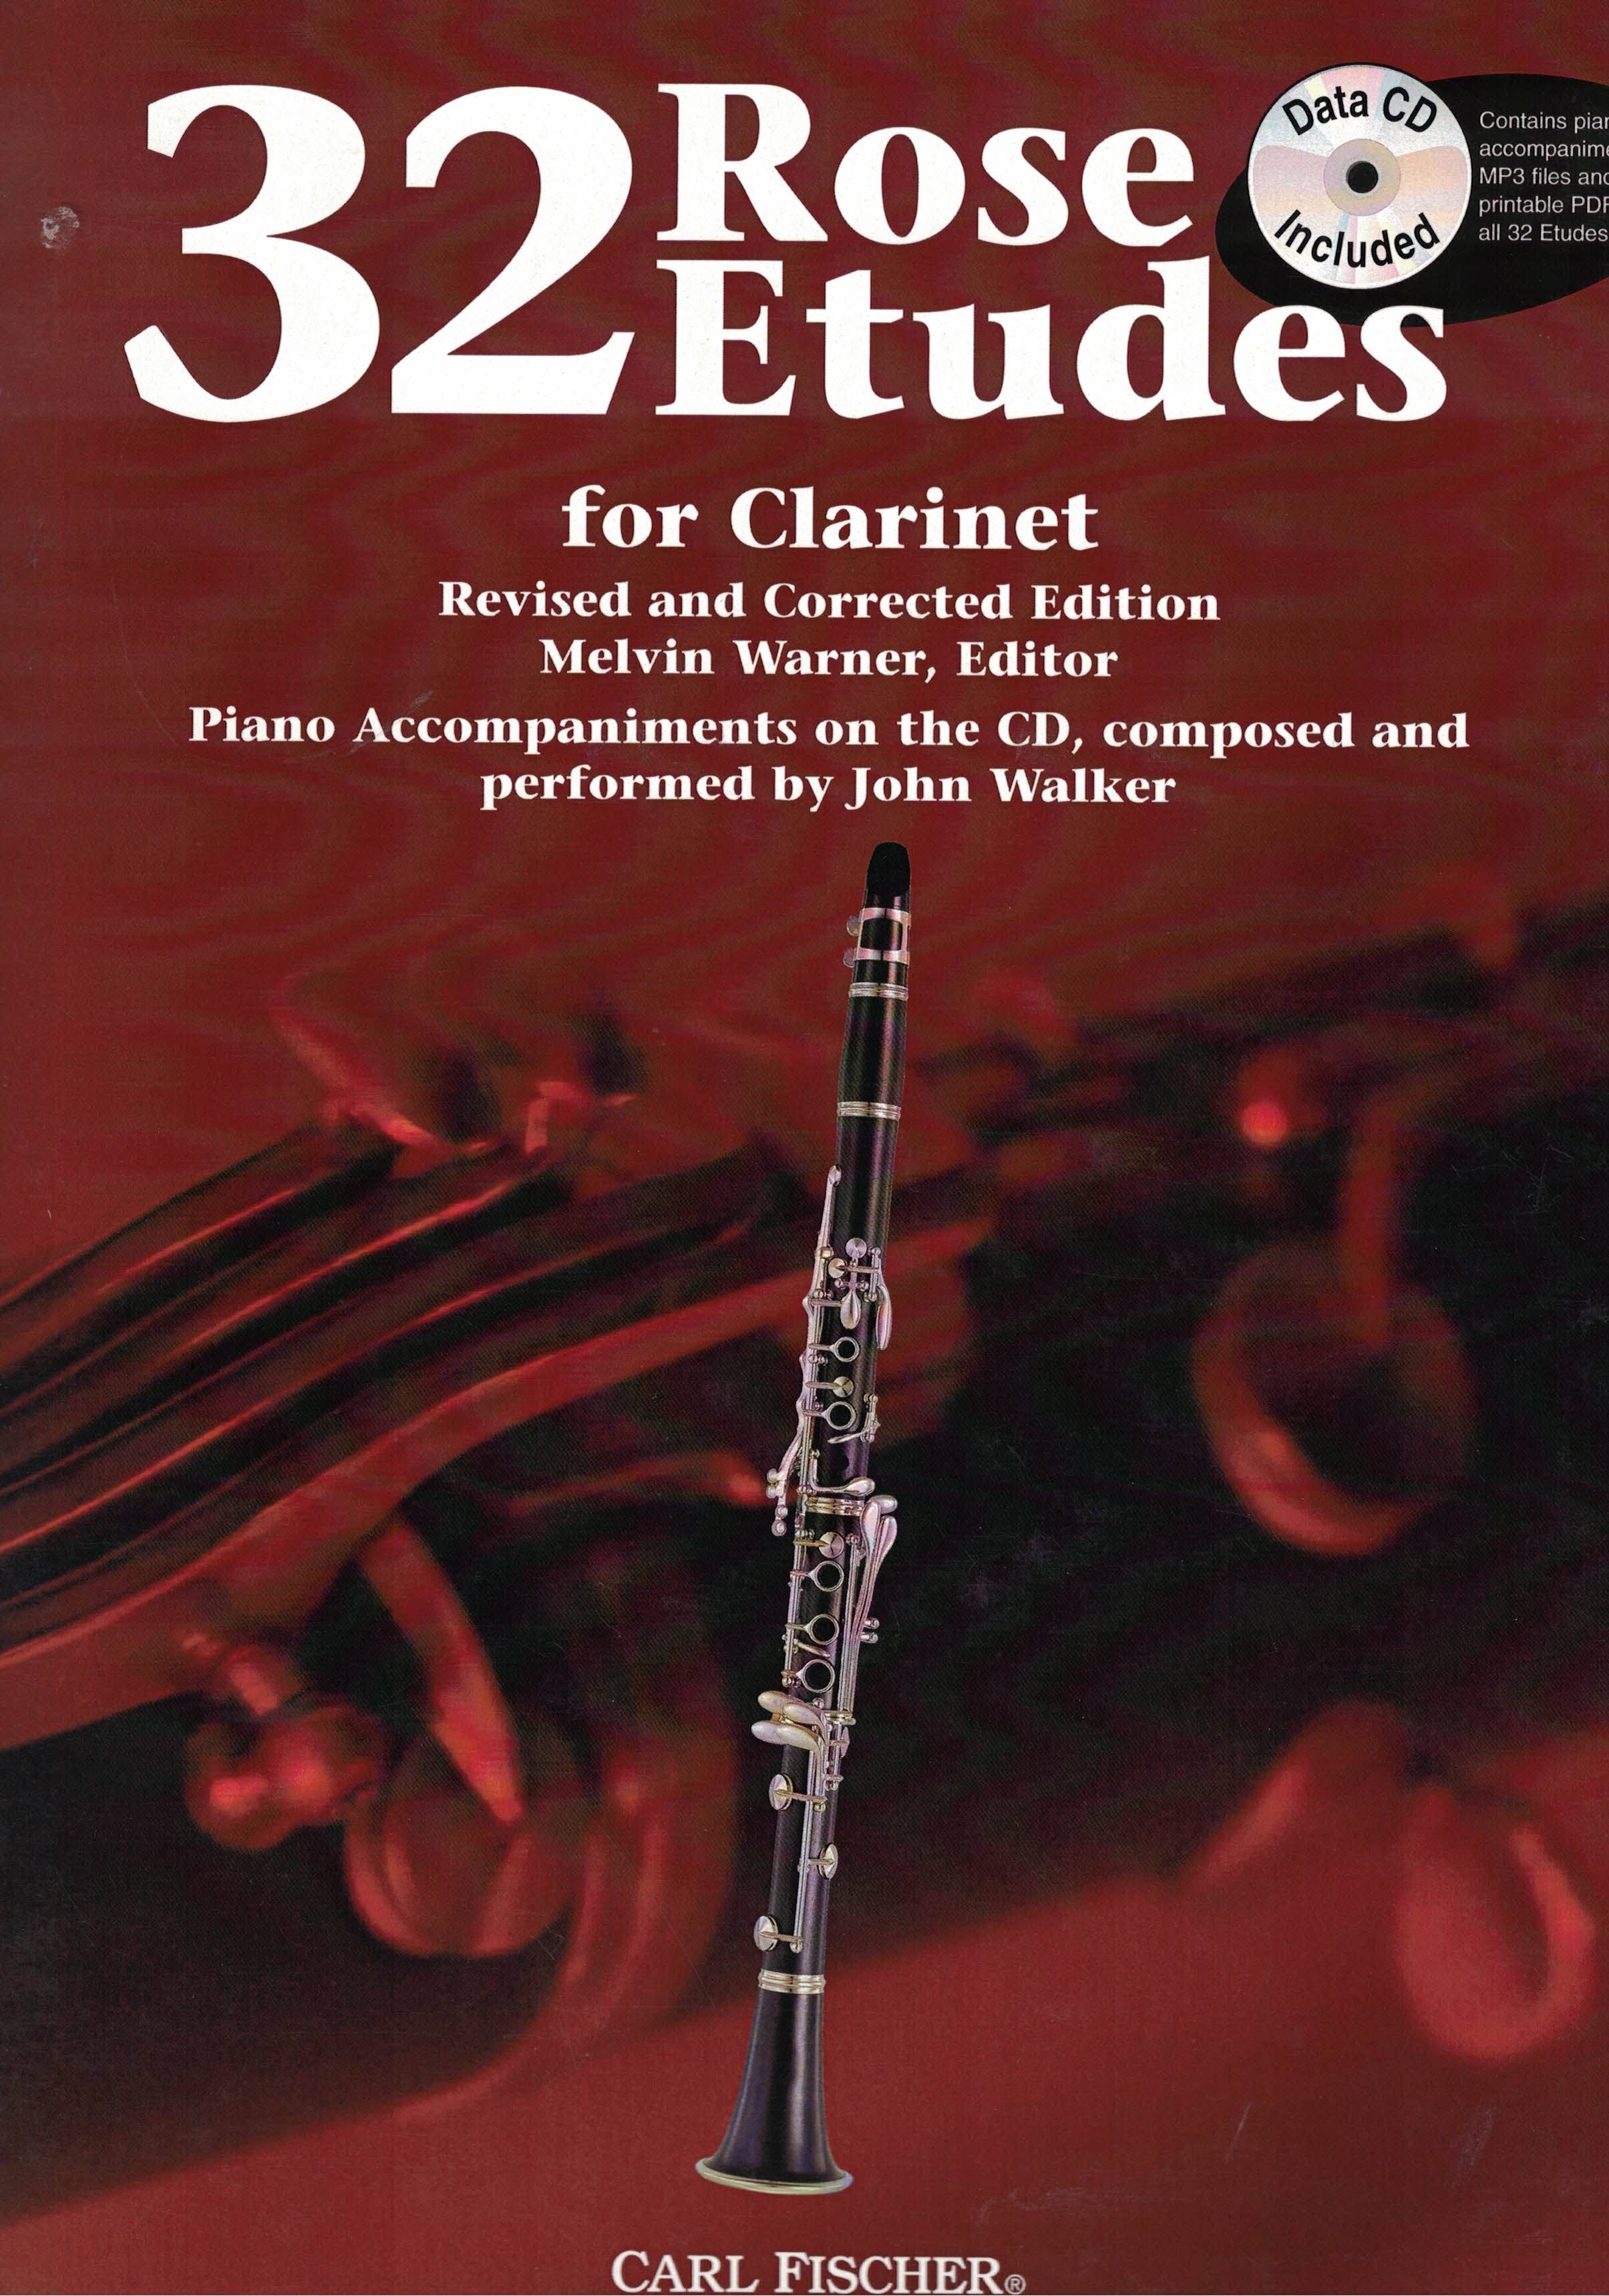 32 Rose Etudes for Clarinet - Carl Fischer